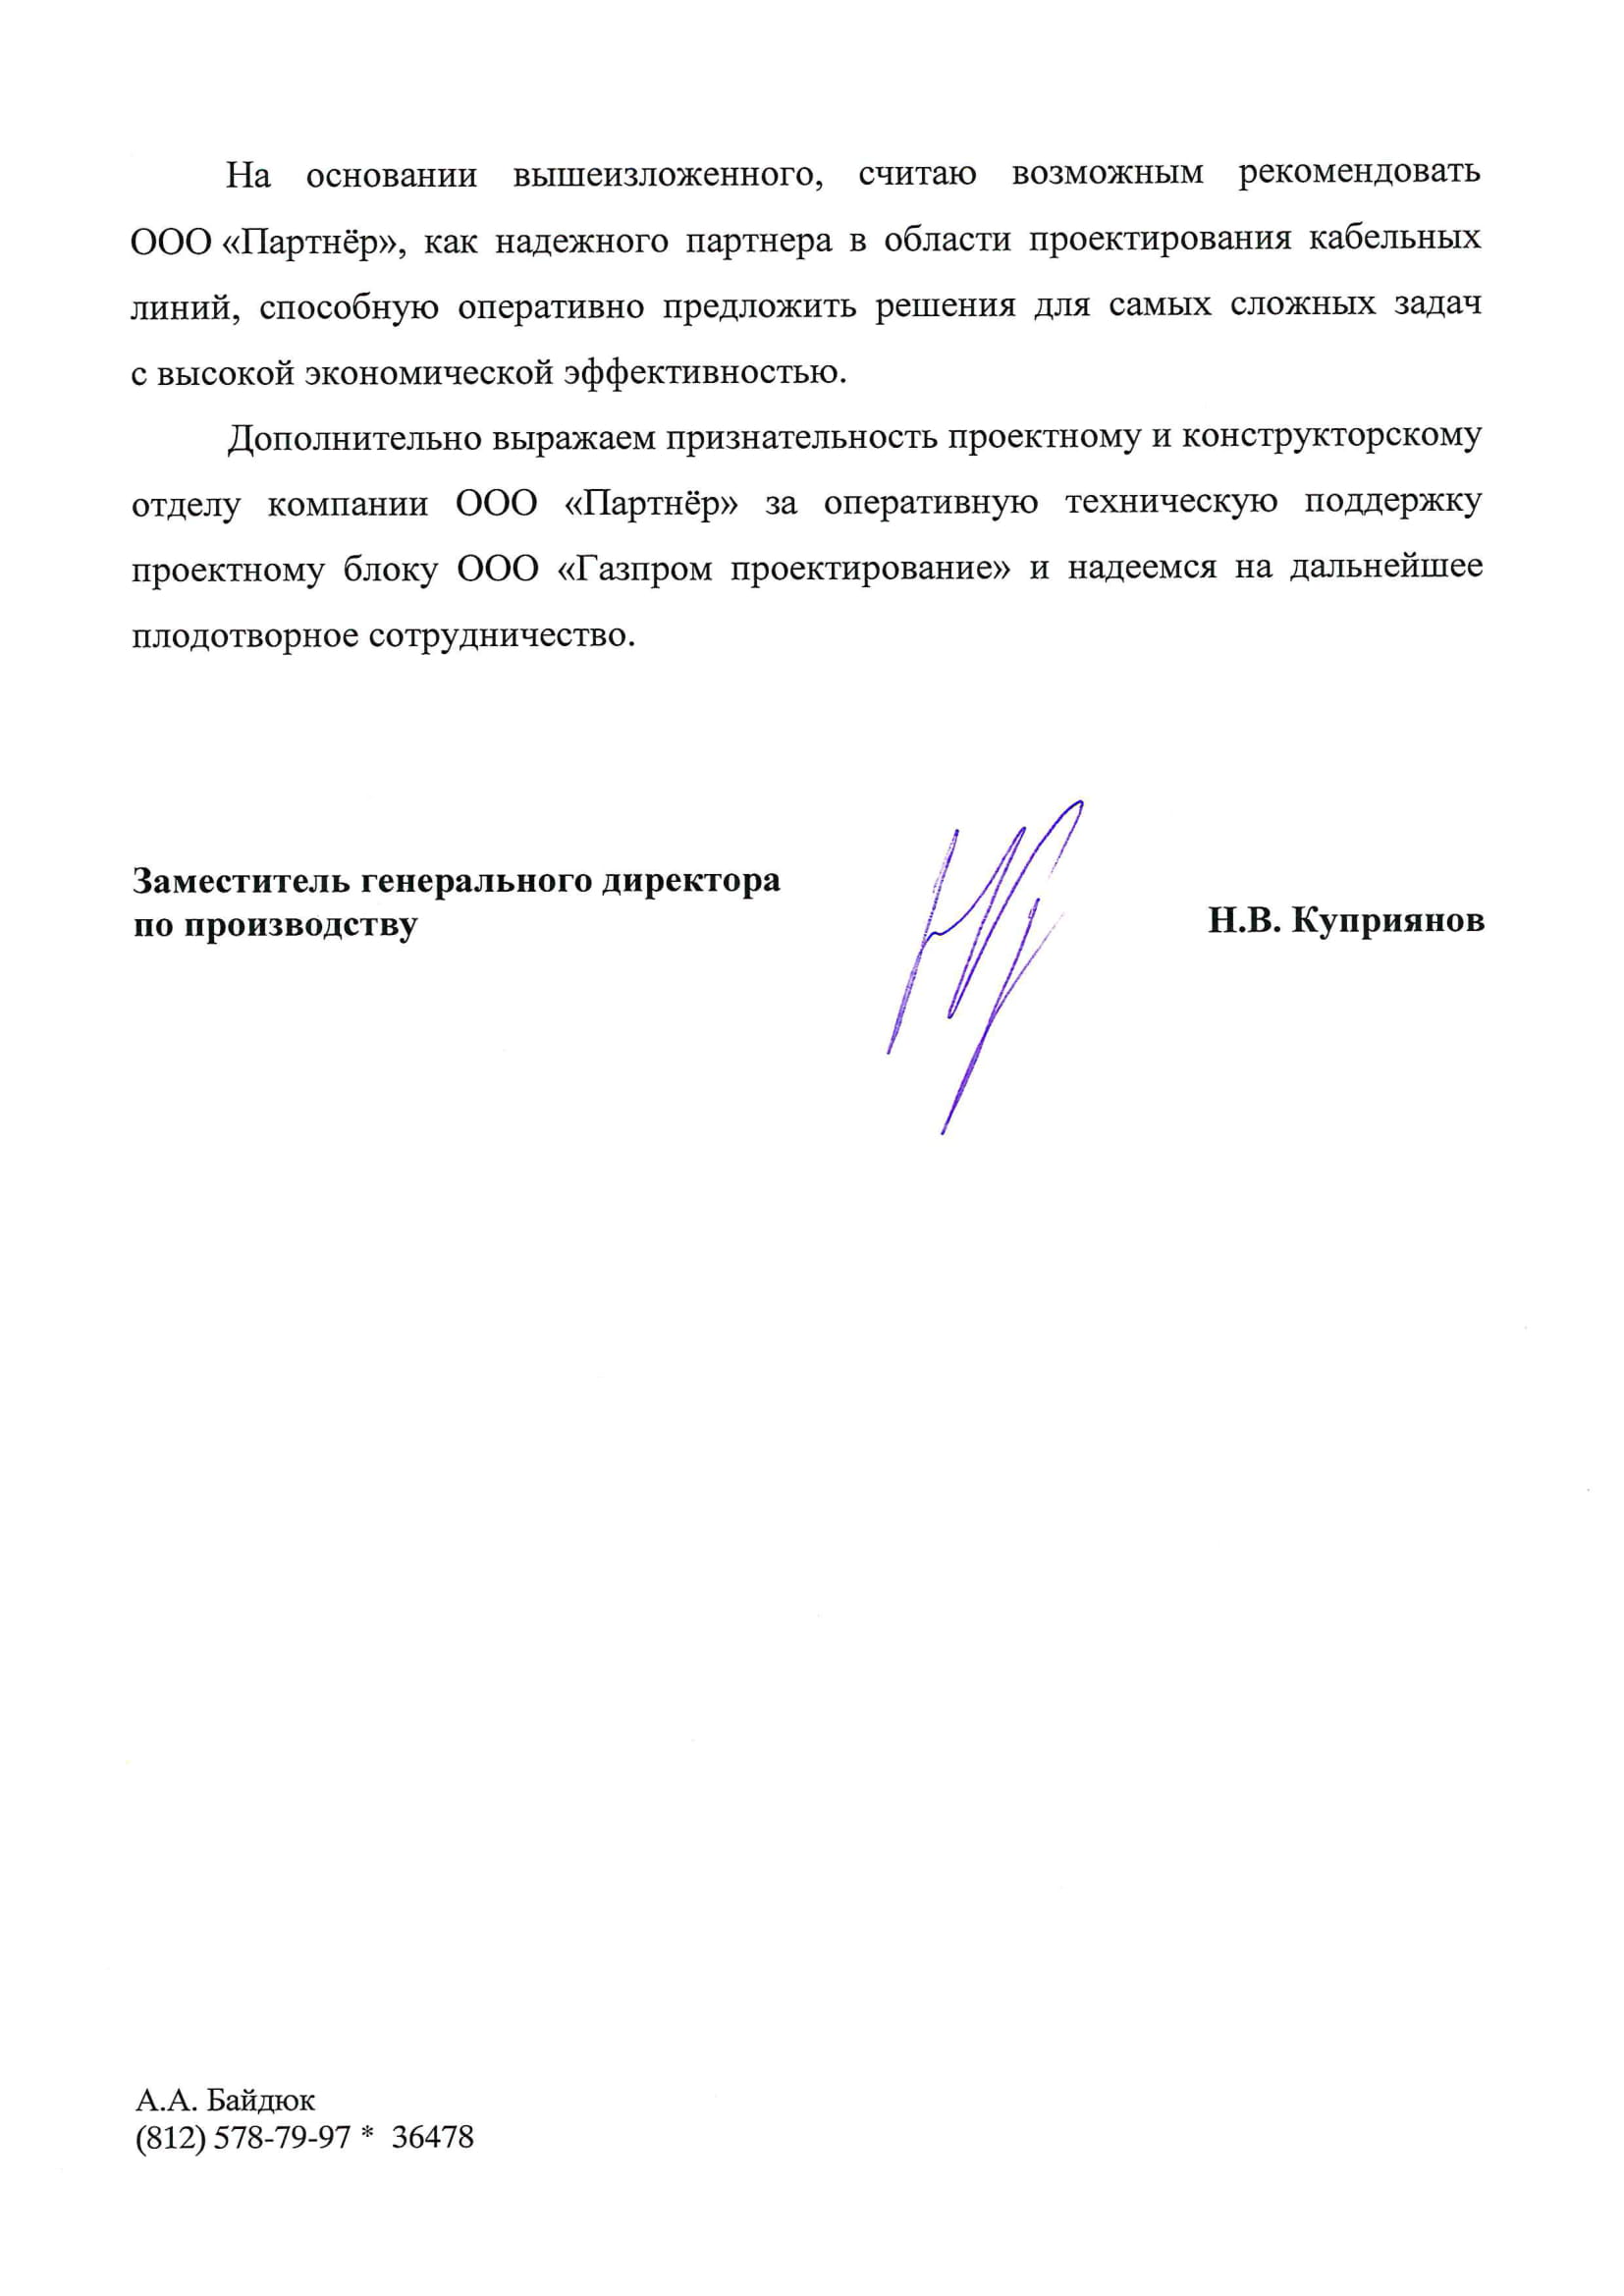 Отзыв о сотрудничестве ООО Газпром проектирование-2.jpg